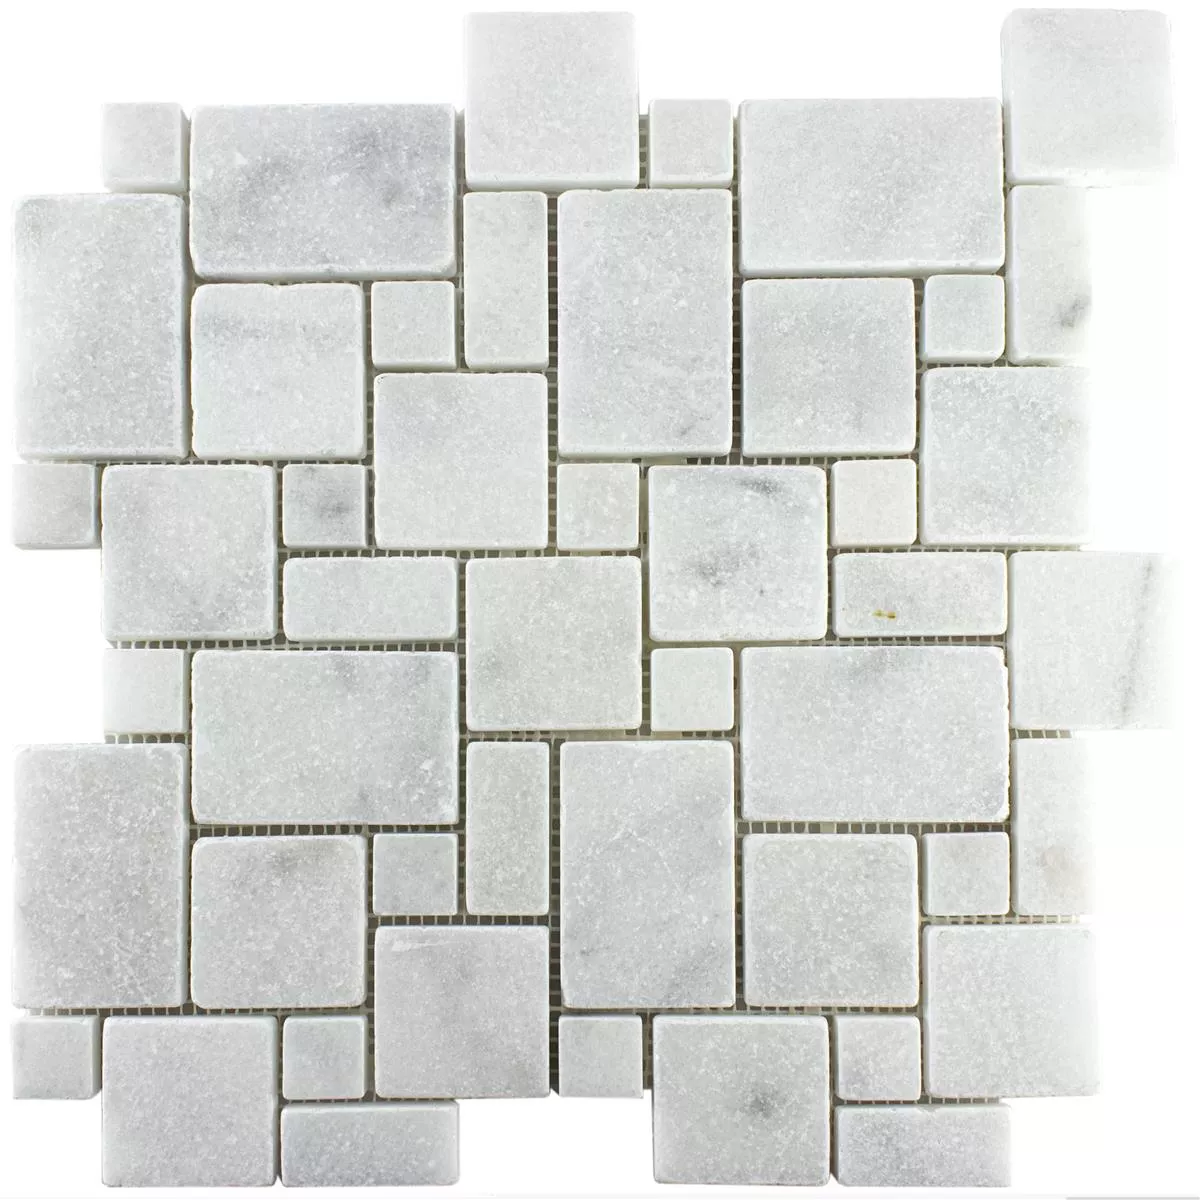 Naturstein Marmor Mosaikfliesen Kilkenny Weiß